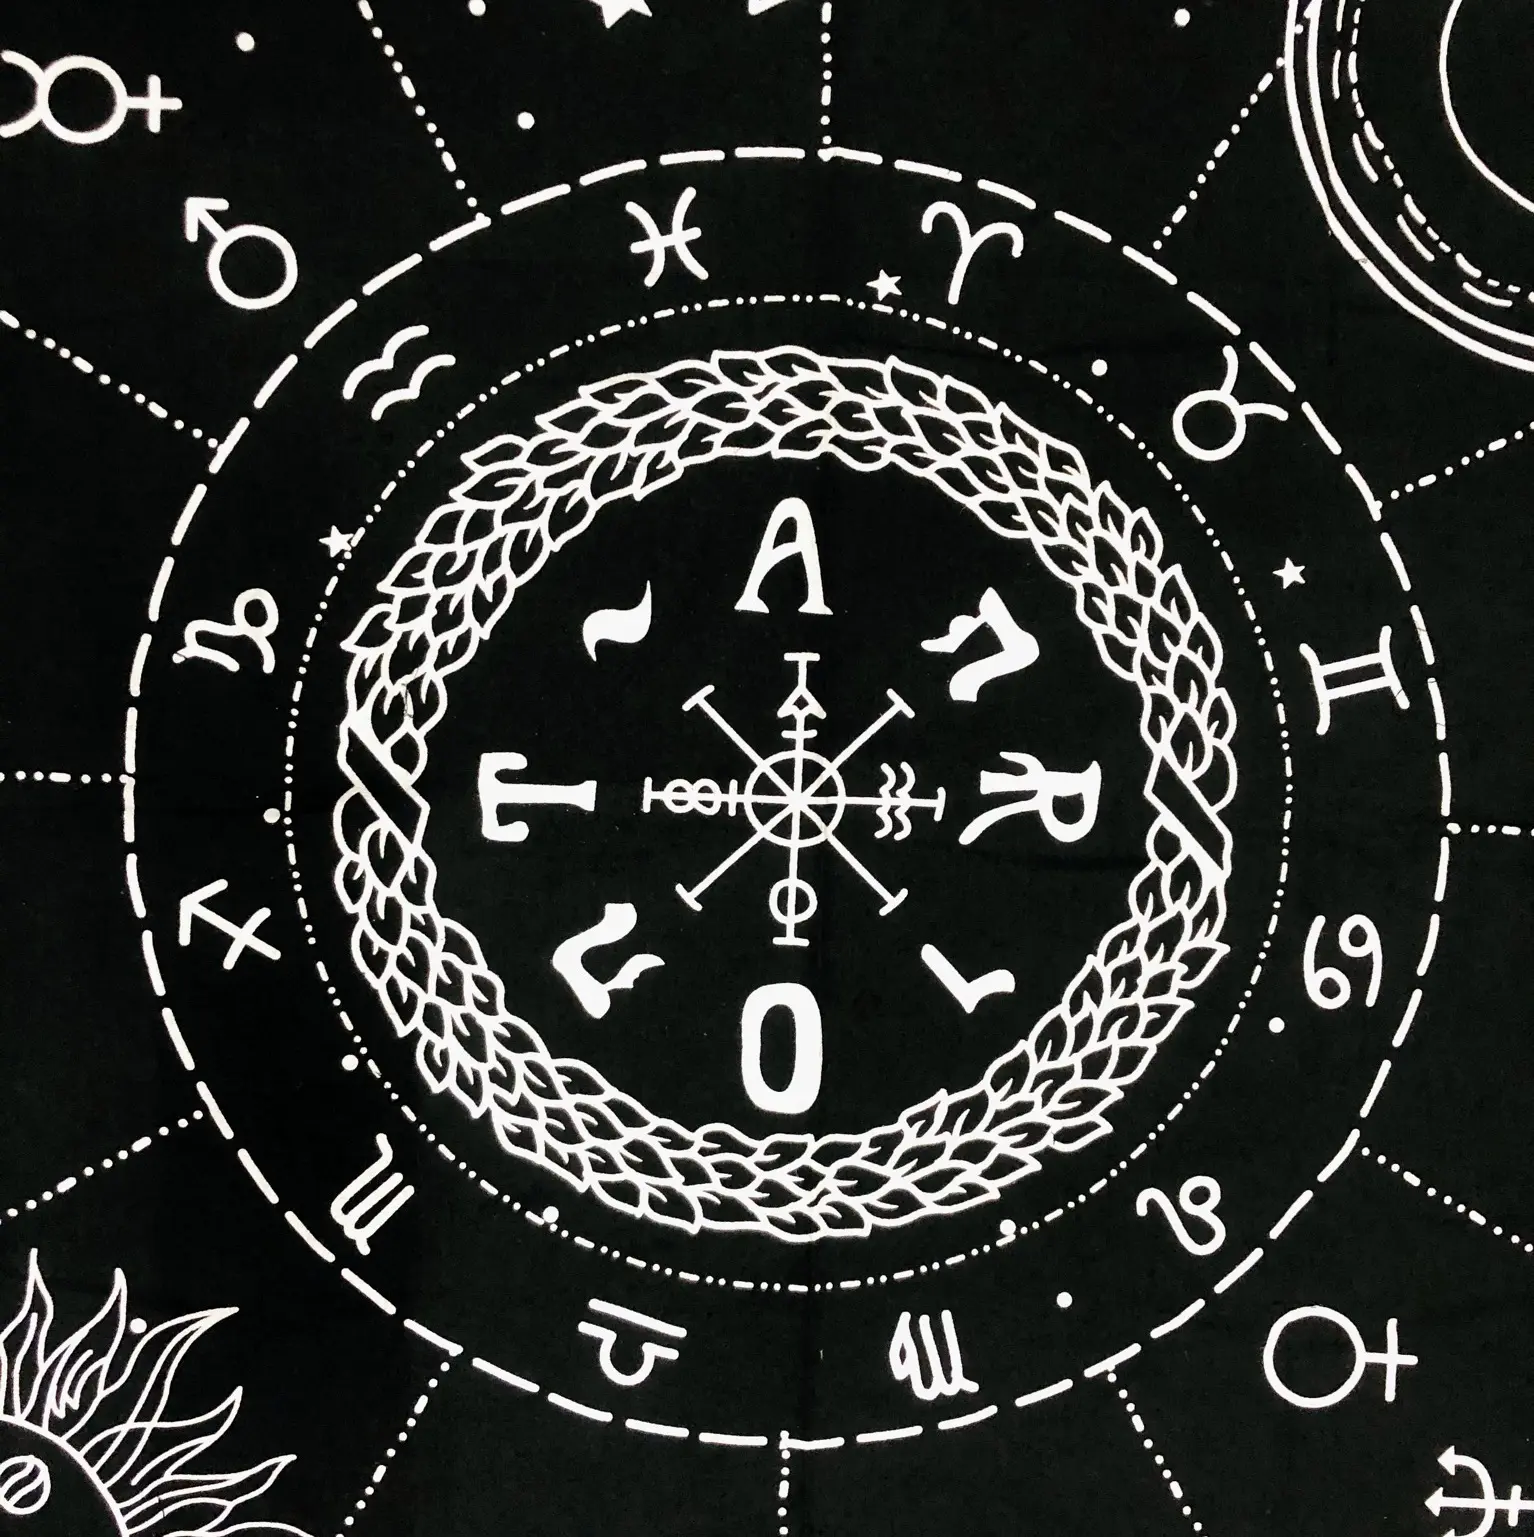 Nappe européenne or et noir, décor de Table avec 12 constellations, étoile, lune, l'univers, sorcellerie